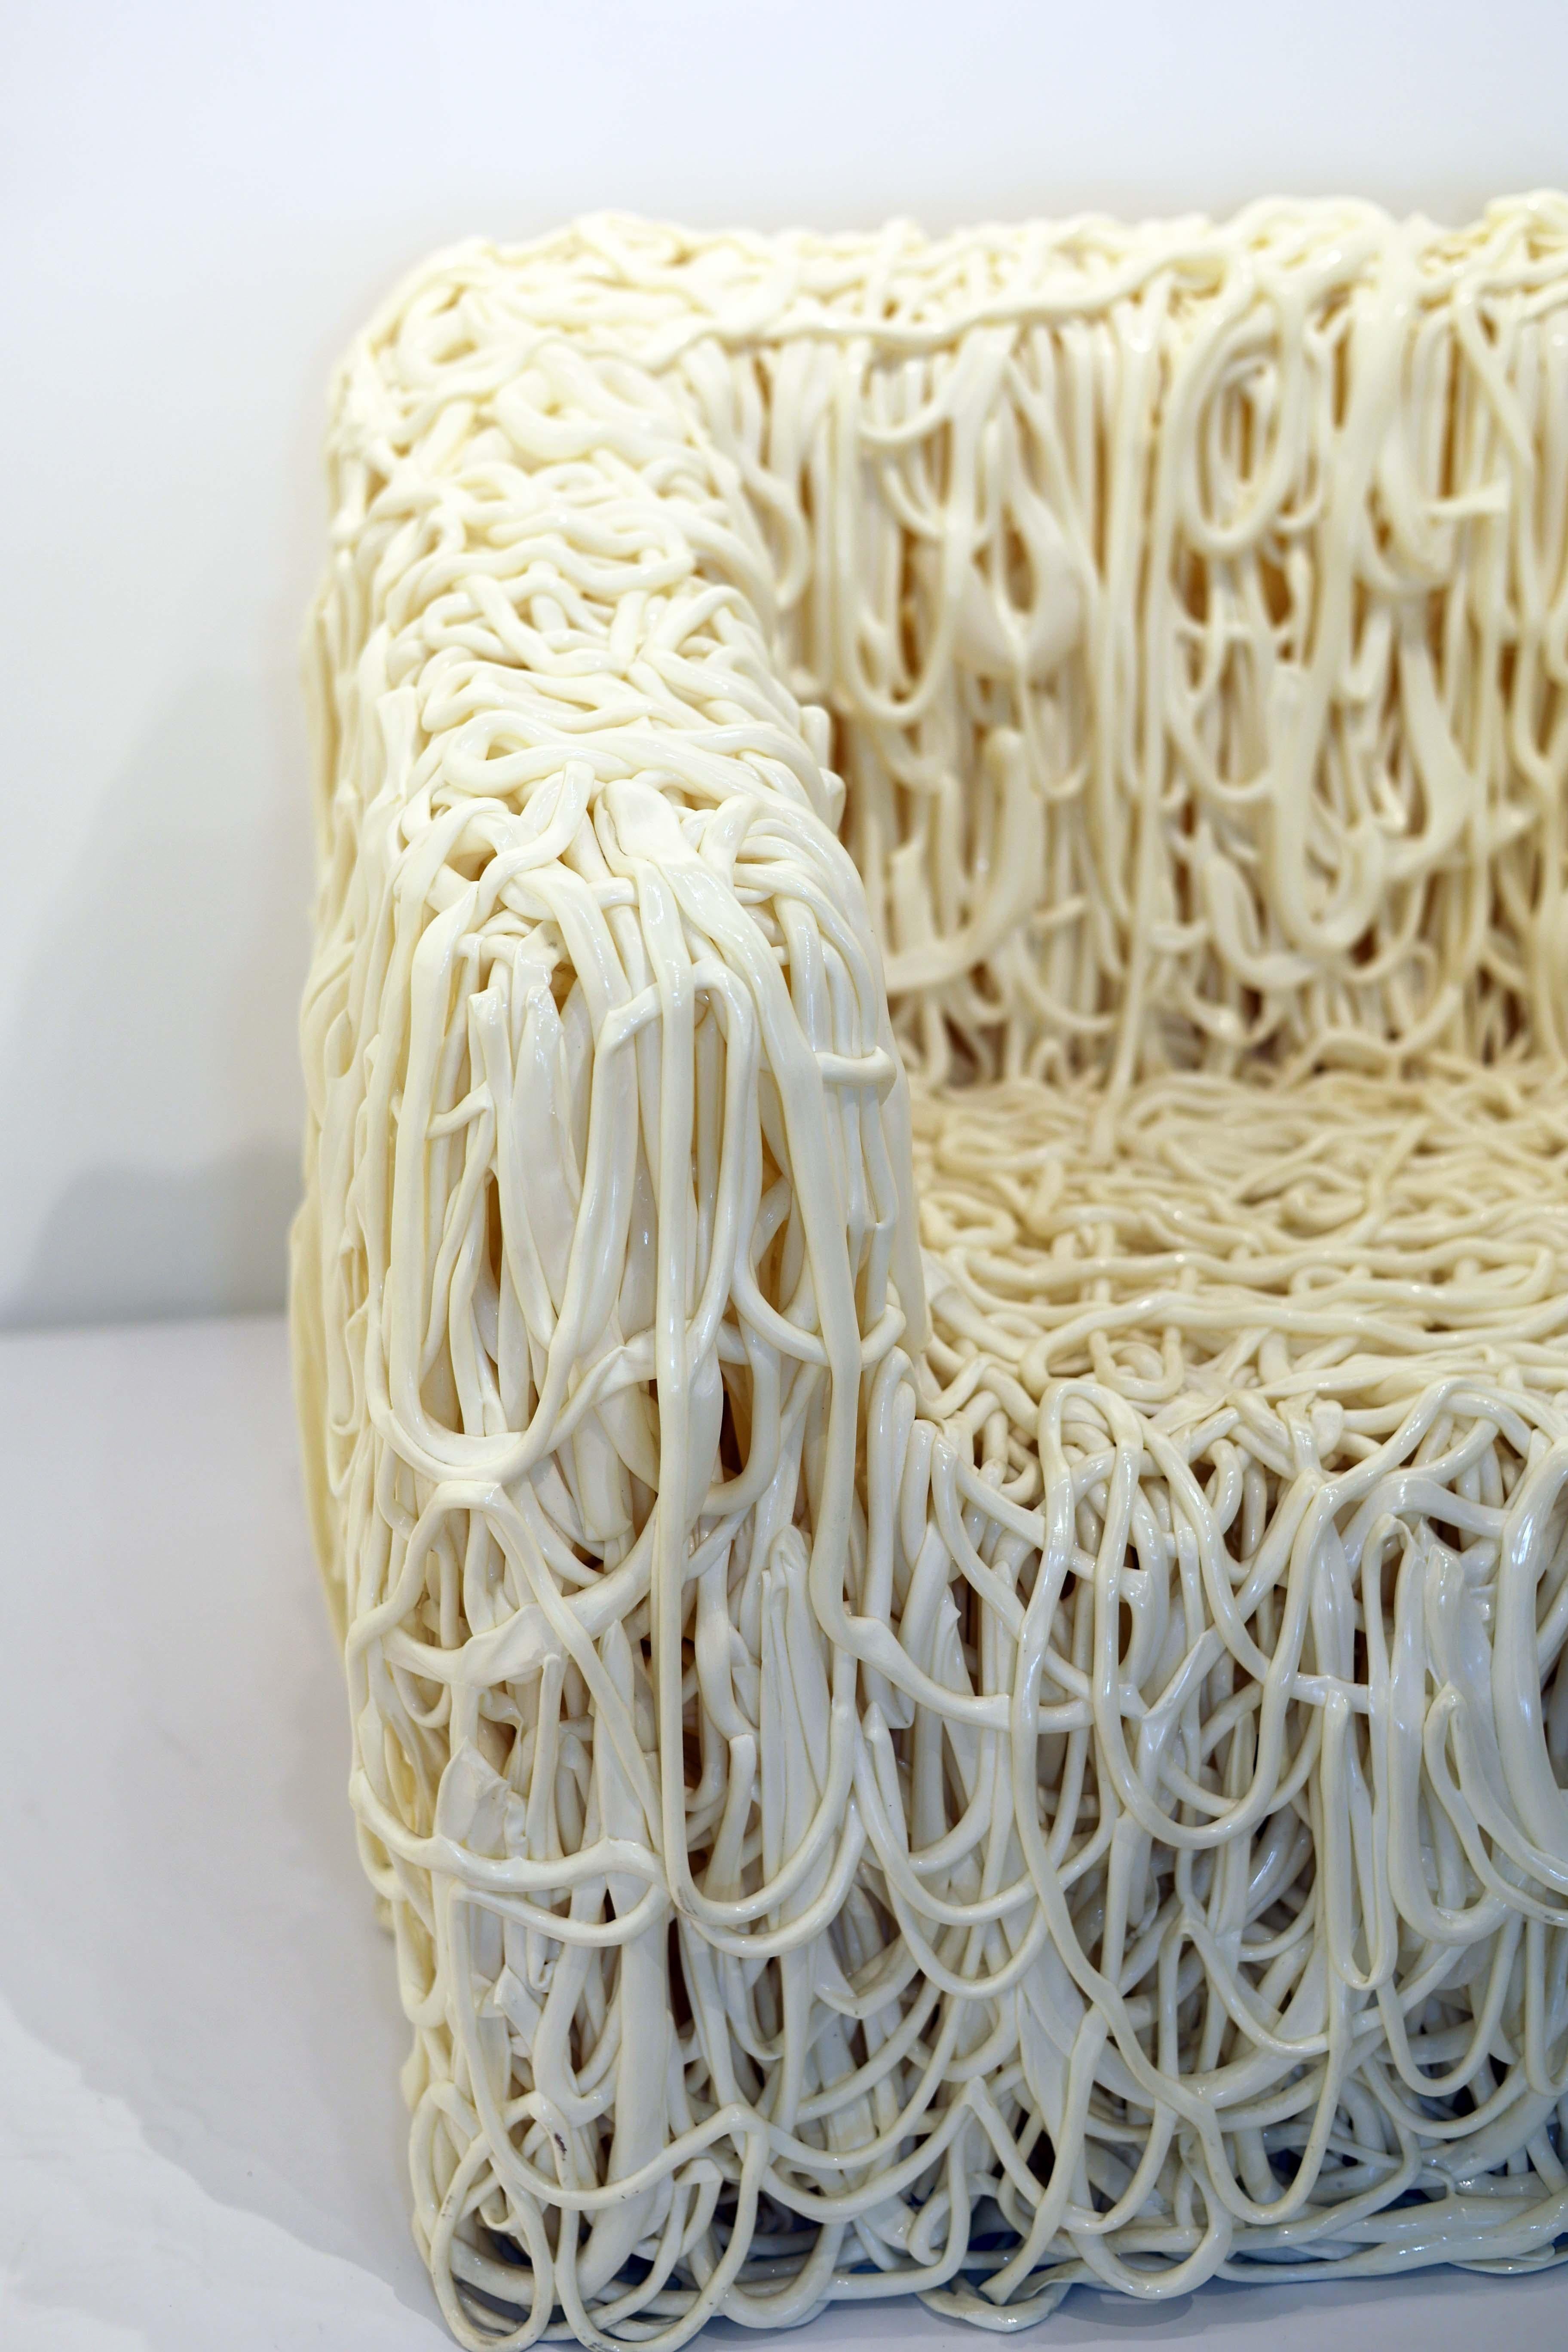 Rare design de Gaetano Pesce produit par Meritalia, Italie 2009. 
Condit en très bon état
Dimensions approximatives

Corde de polyuréthane extrudé moulée dans la forme d'une chaise. Chaque chaise est une œuvre d'art unique. Cet exemplaire est d'un